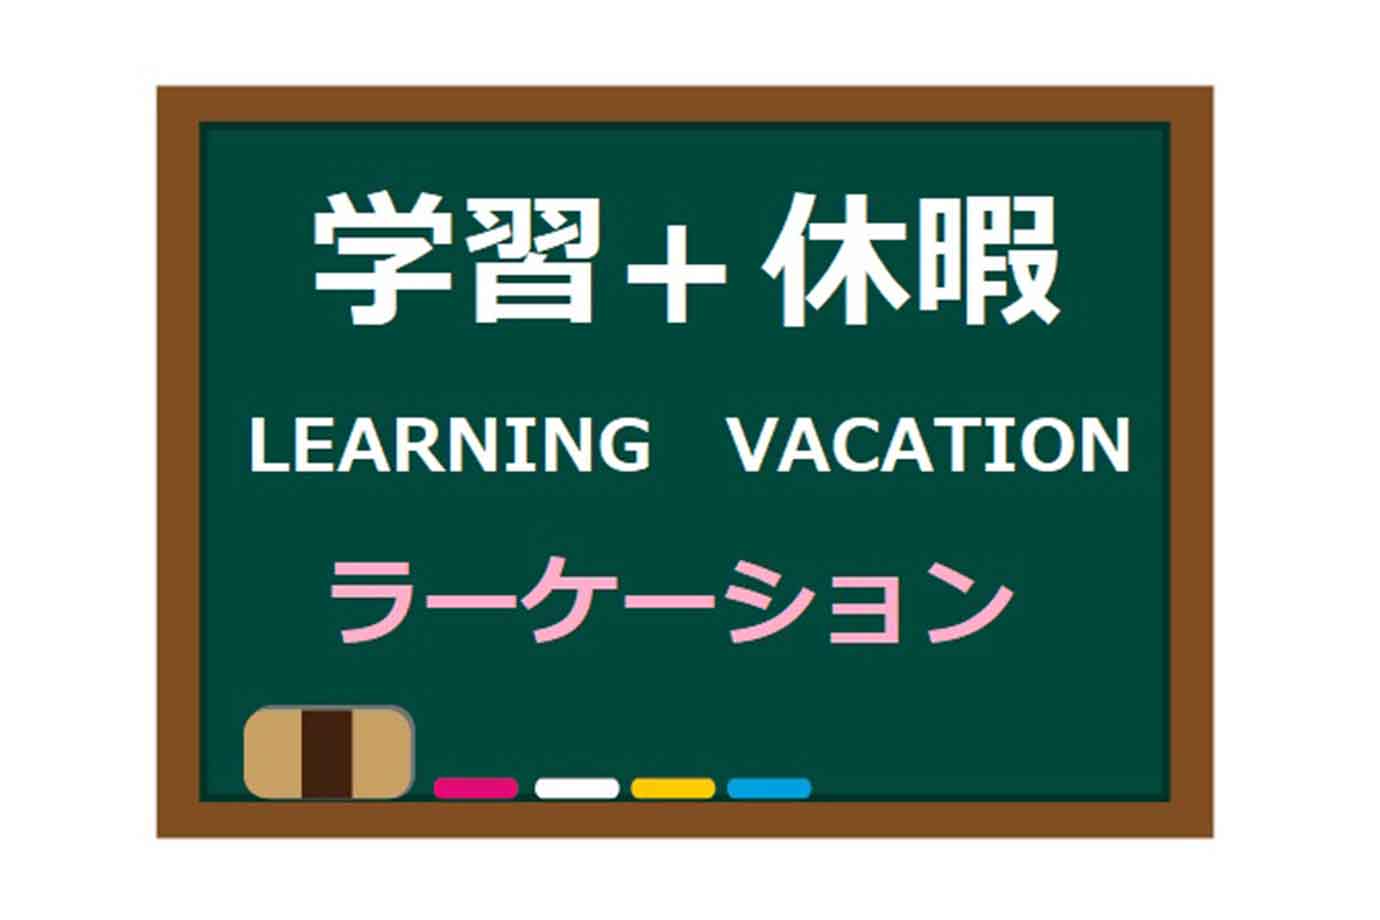 「ラーケーションの日」について、愛知県のホームページでは以下のように紹介されています。